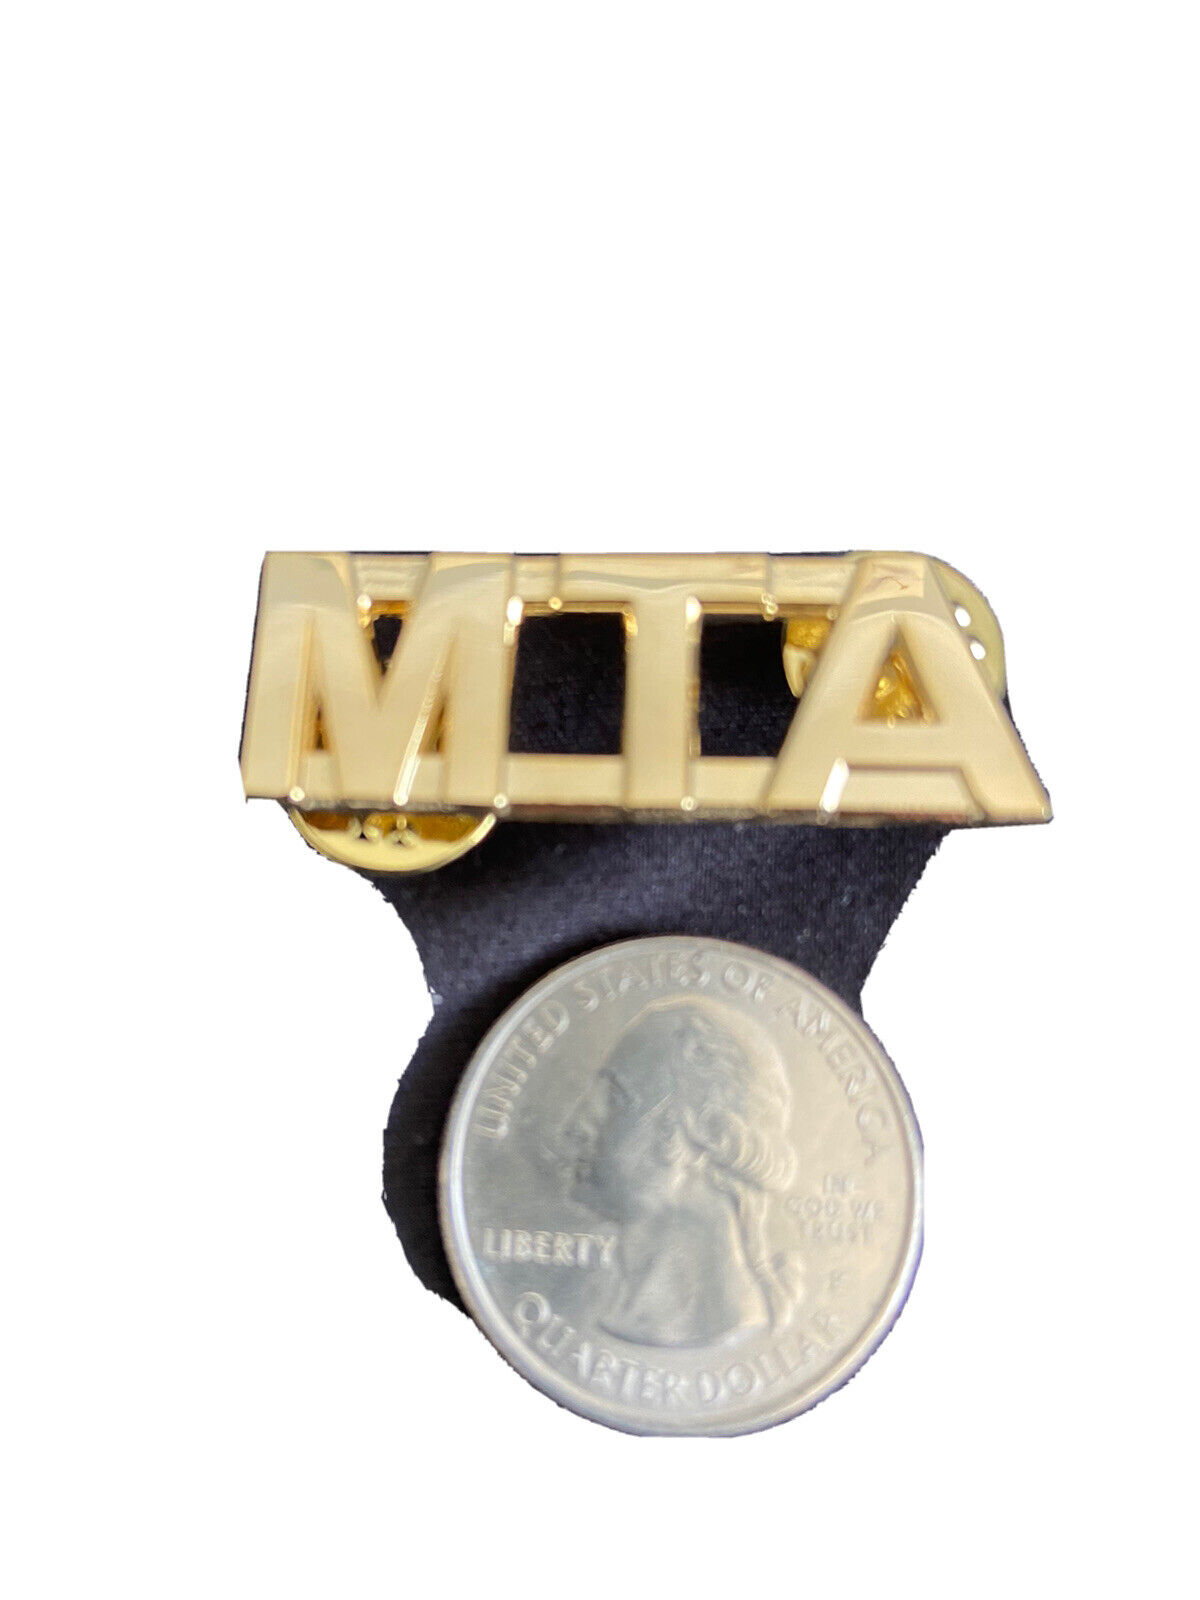 New MTA NYCT Colar Pin.Gold tone